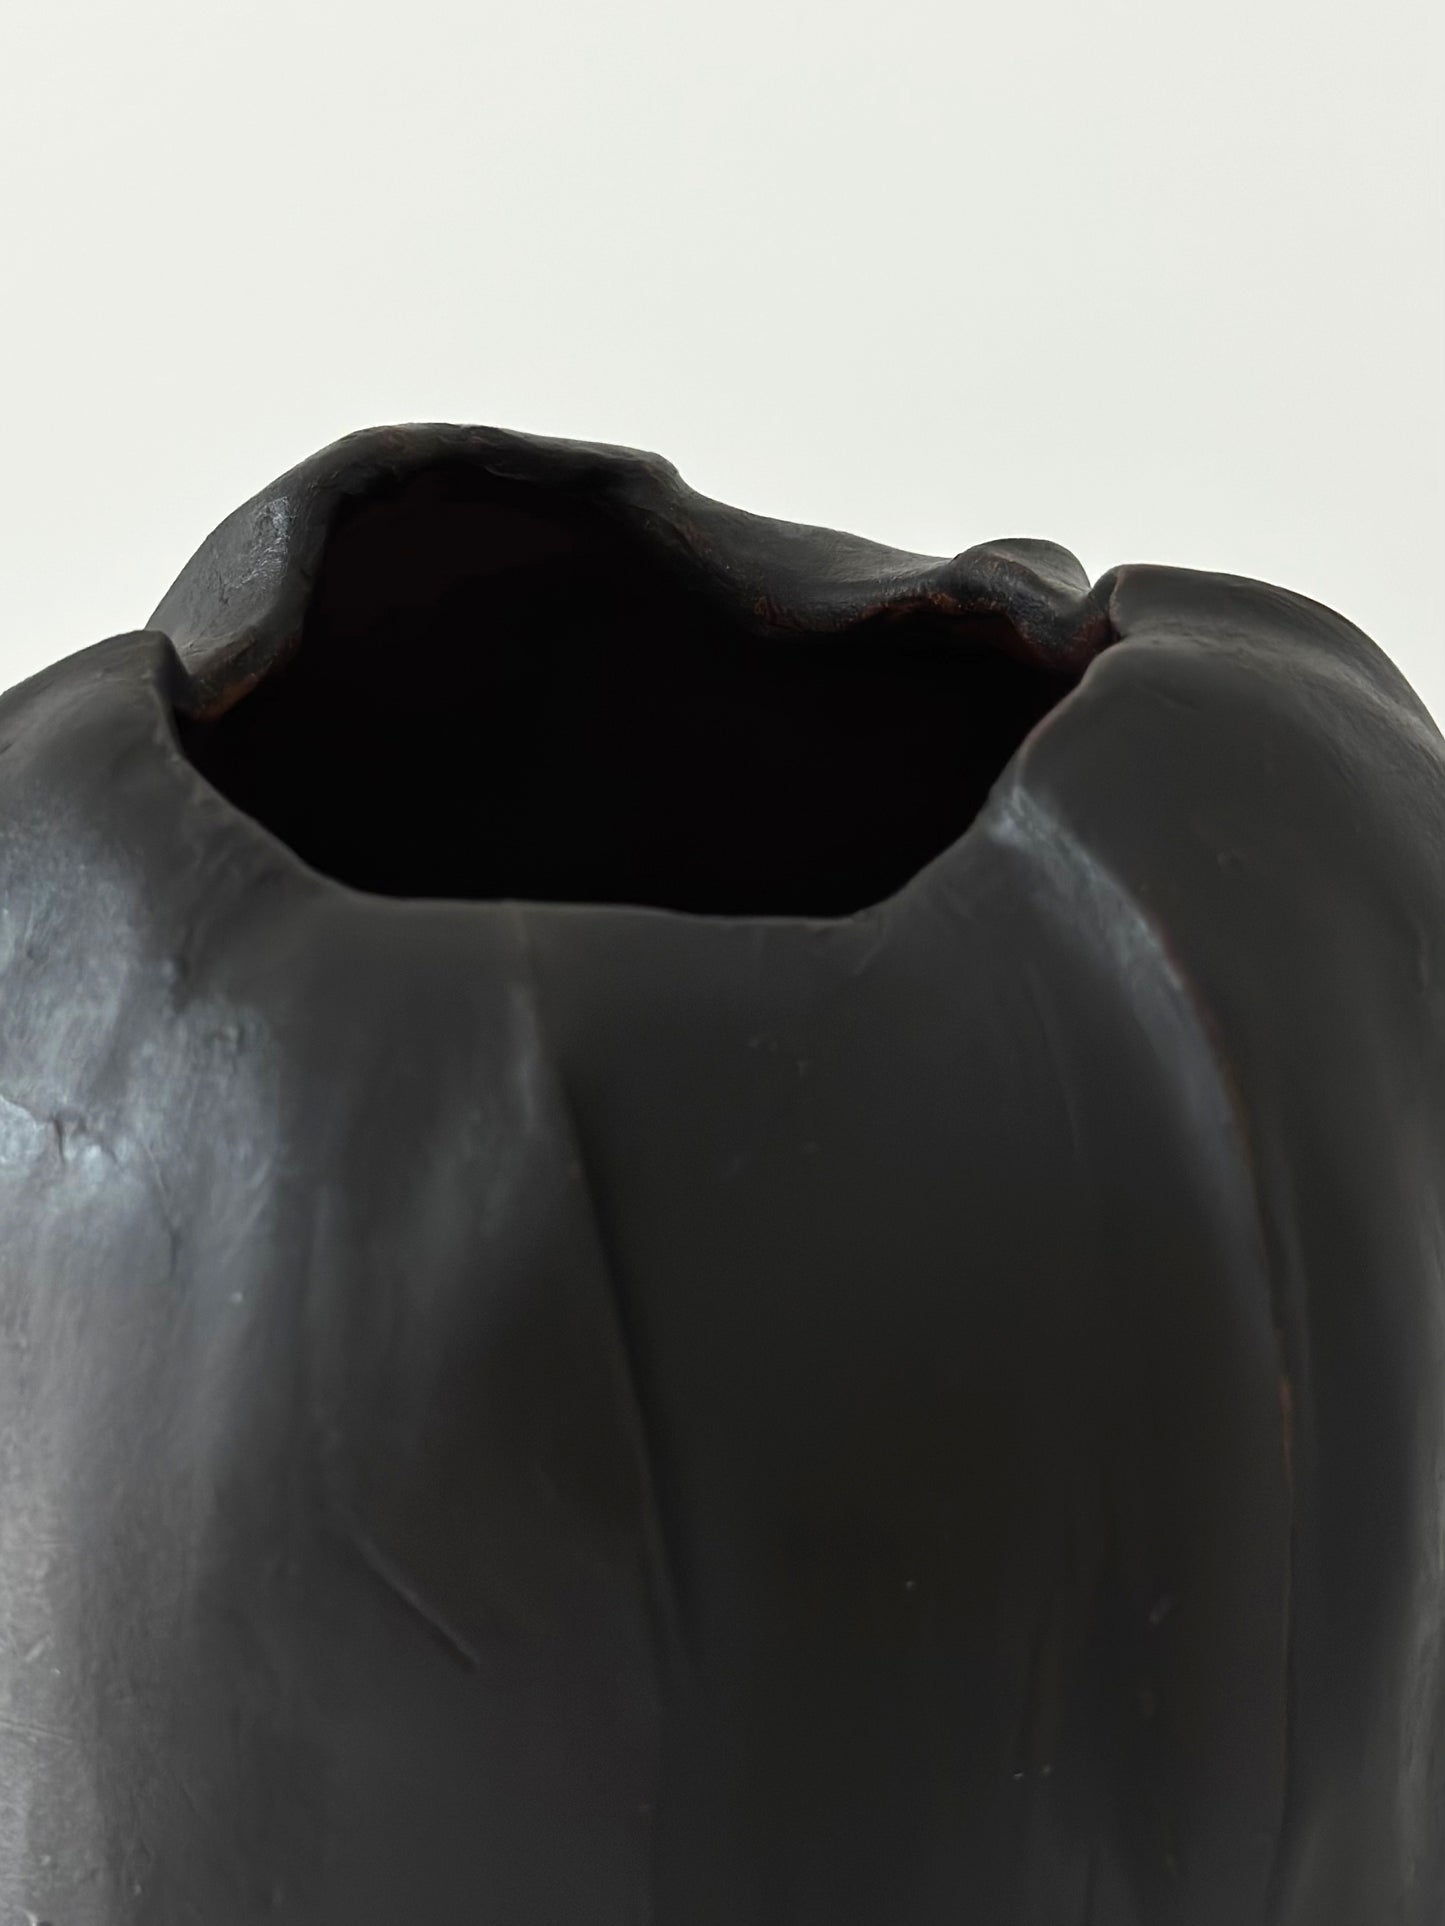 Vase, "No titel", Black